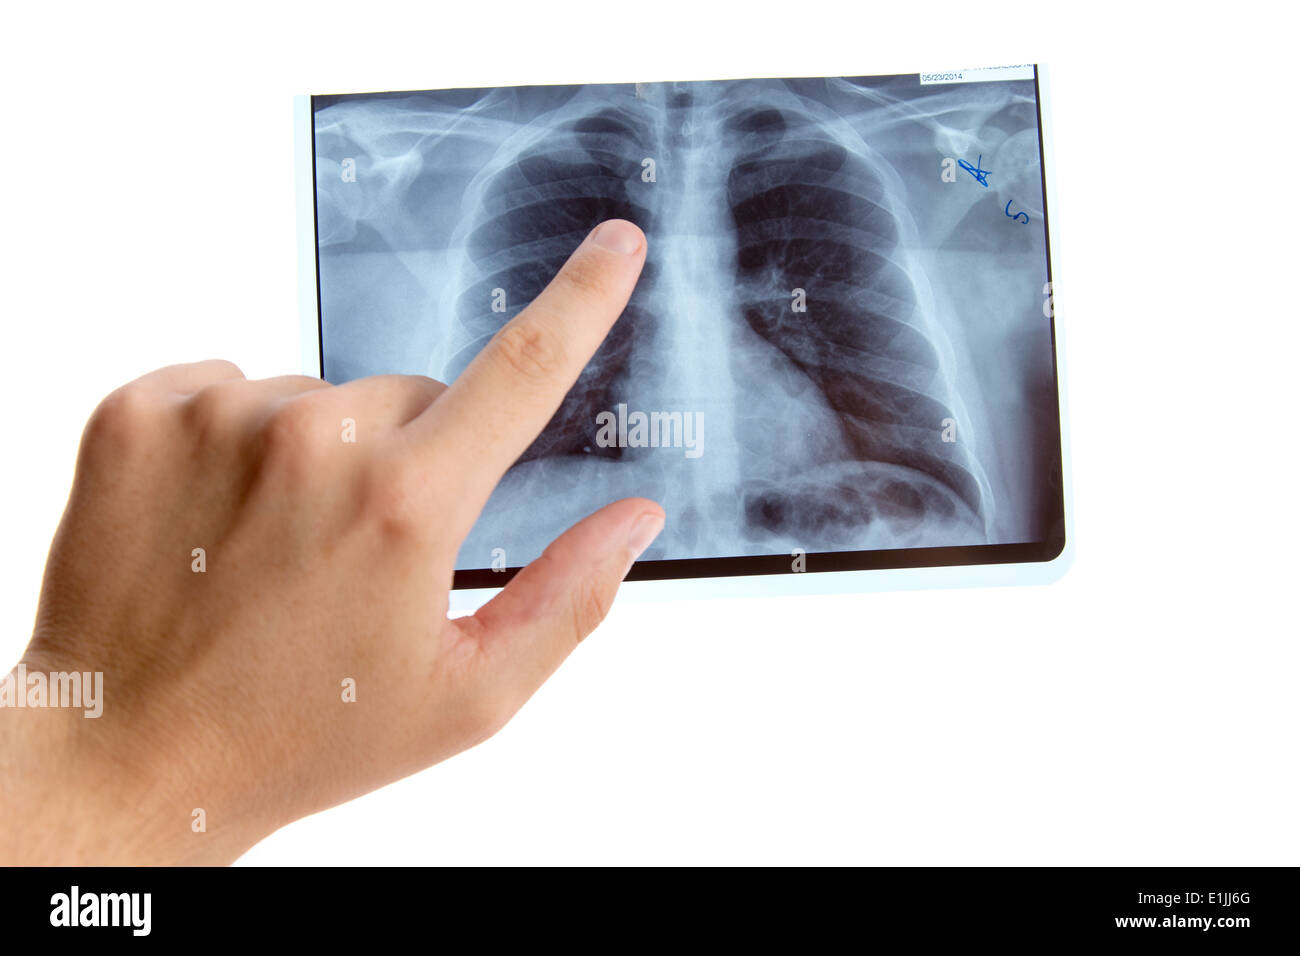 Homme main pointant sur la radiographie pulmonaire, isolé sur fond blanc Banque D'Images